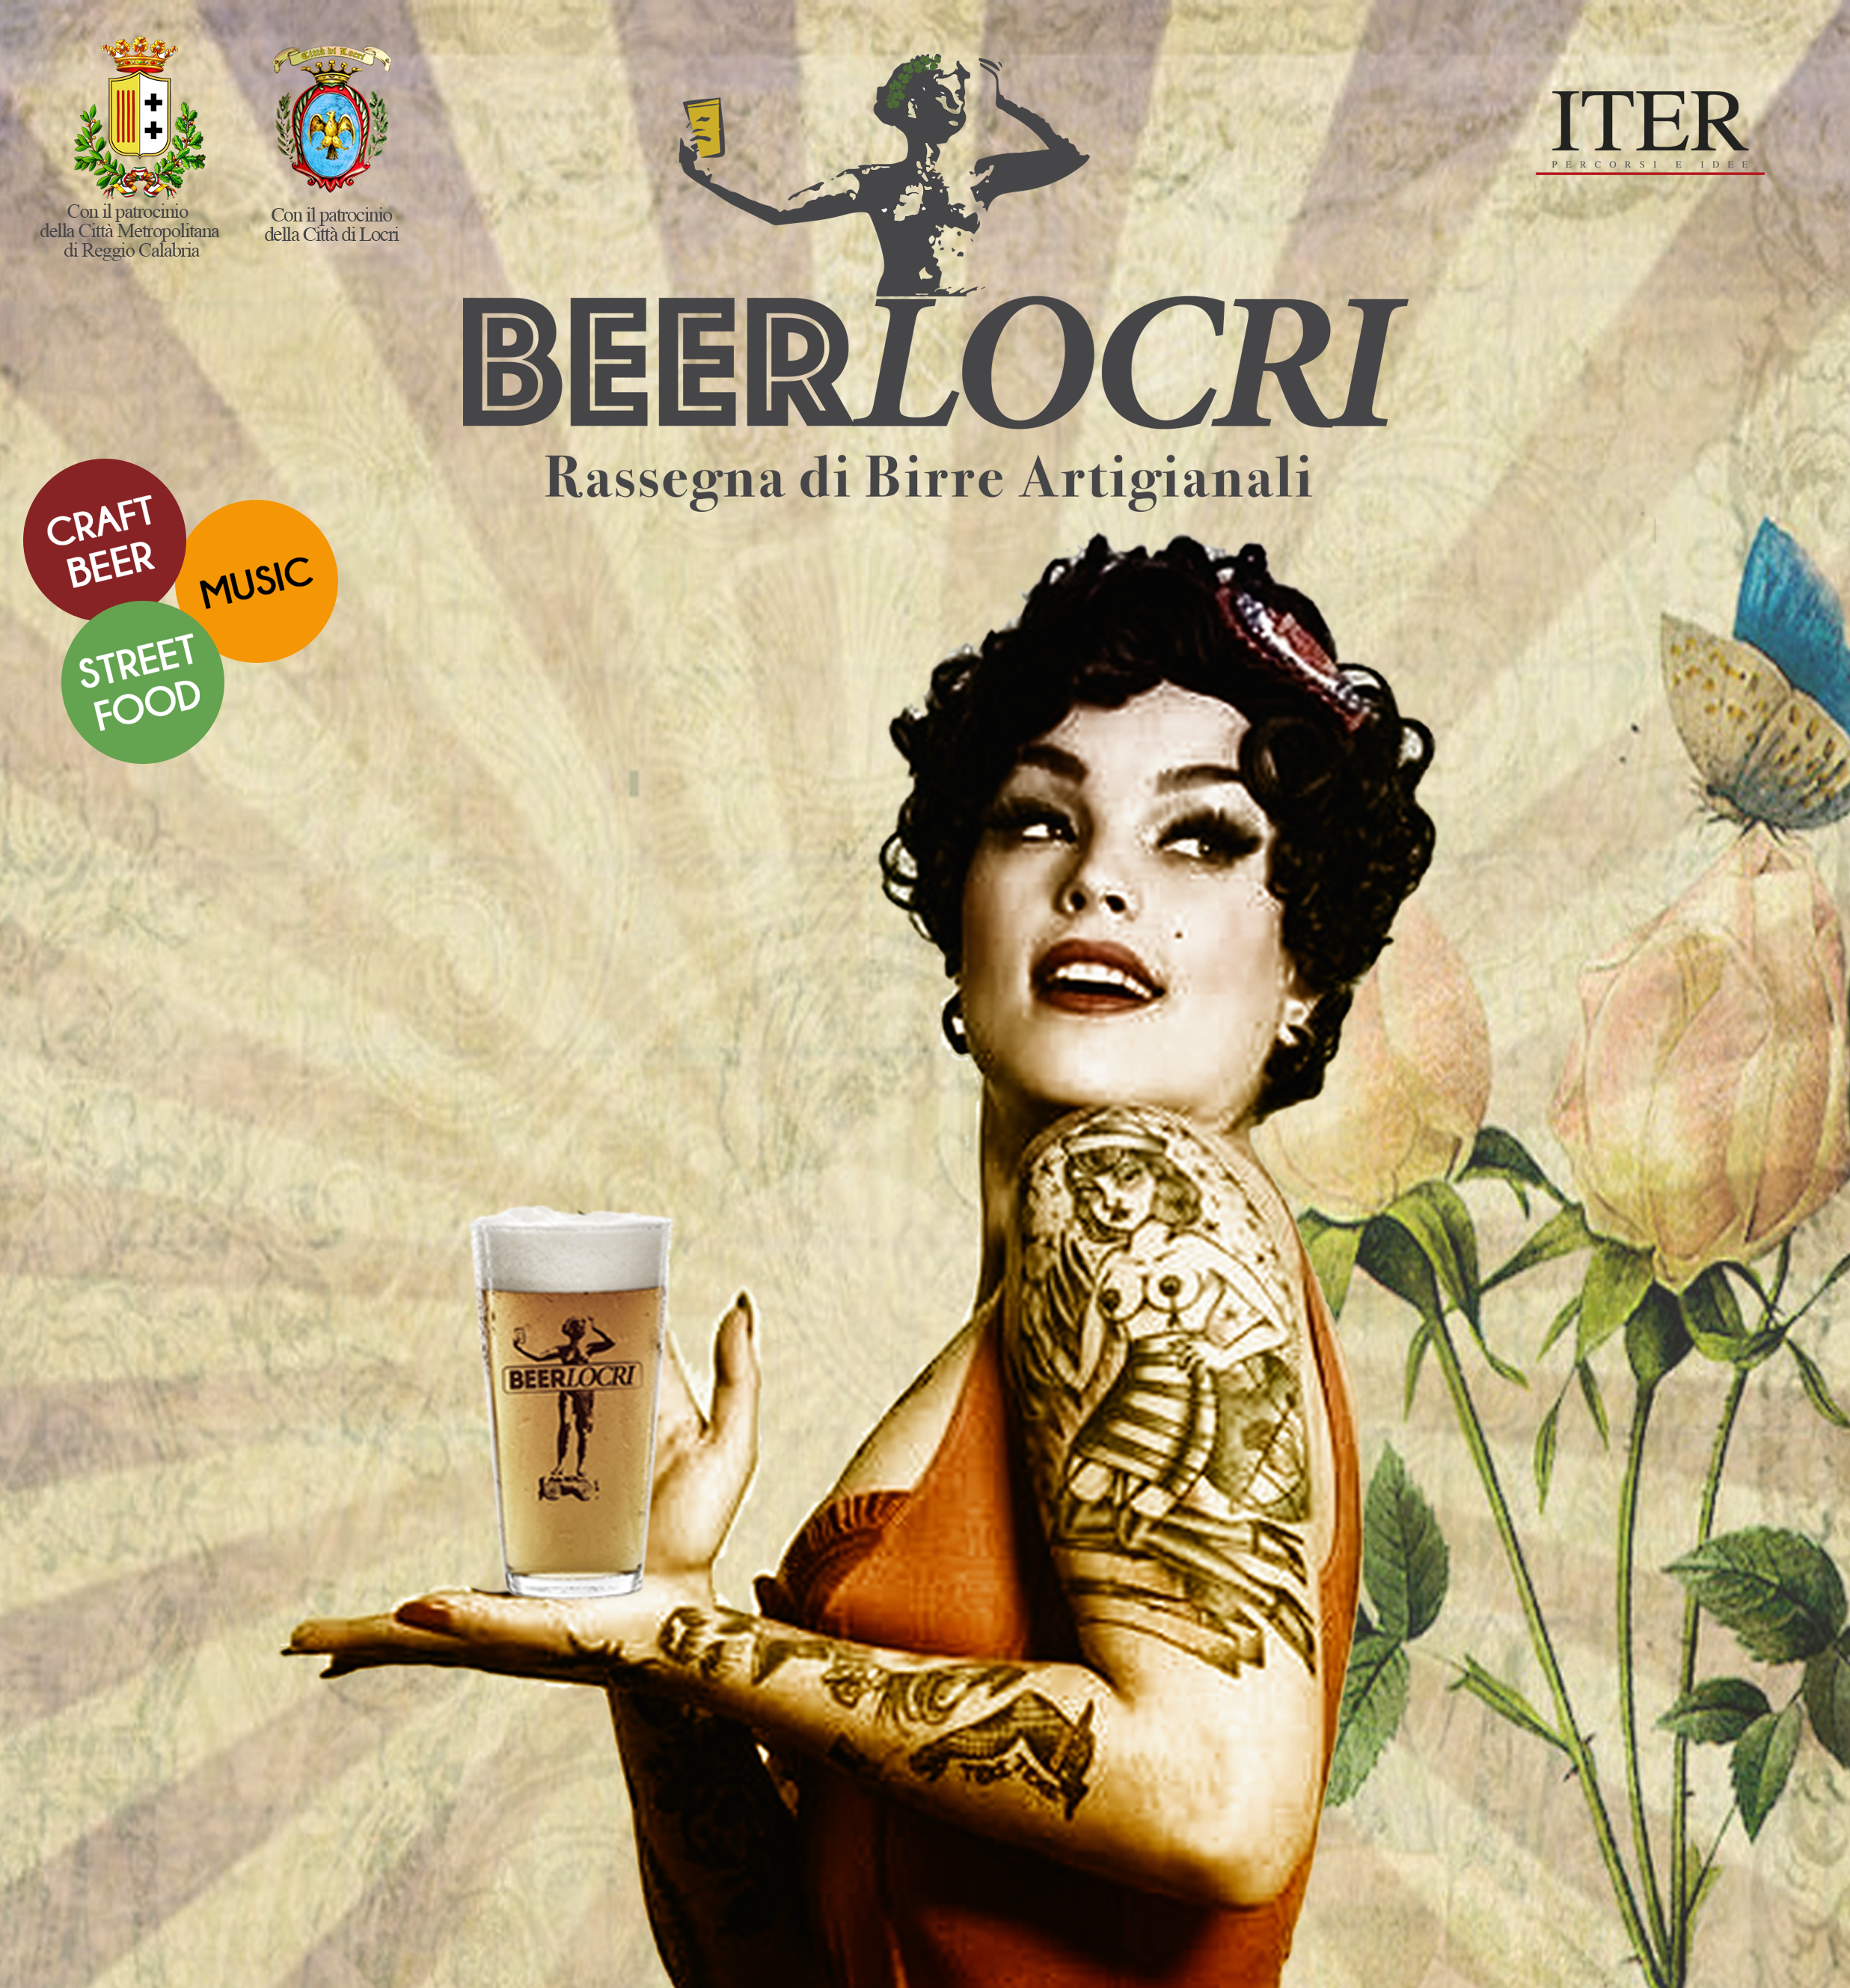 Dal 4 al 6 agosto torna Beer Locri, all’insegna delle birre artigianali